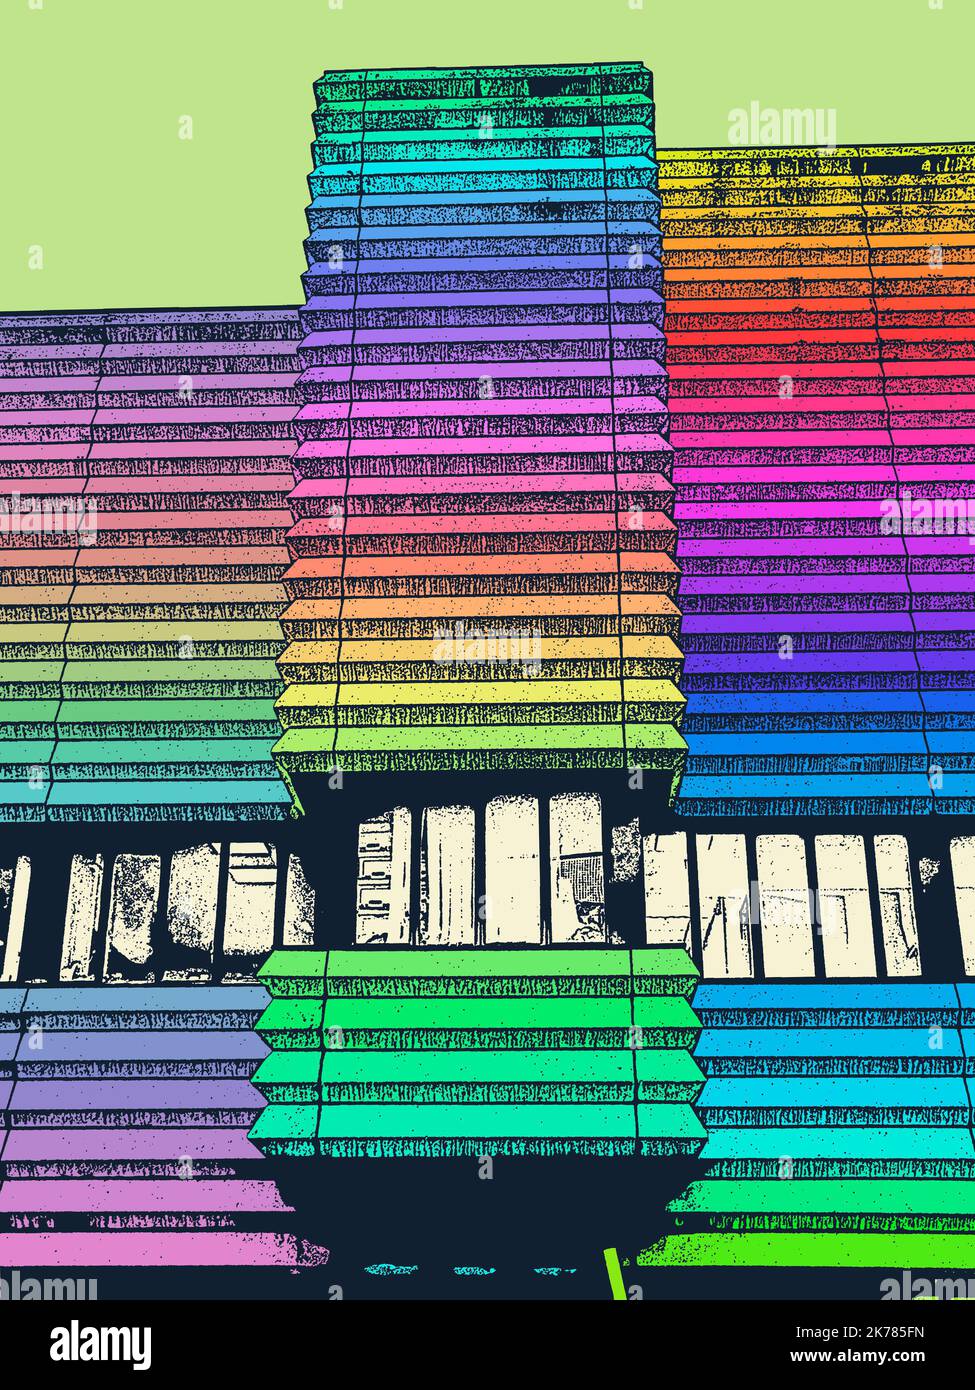 Il centro di Birmingham, dai colori vivaci e vivaci, è una serie di opere d'arte digitali ispirate alla variegata comunità di Birmingham Foto Stock